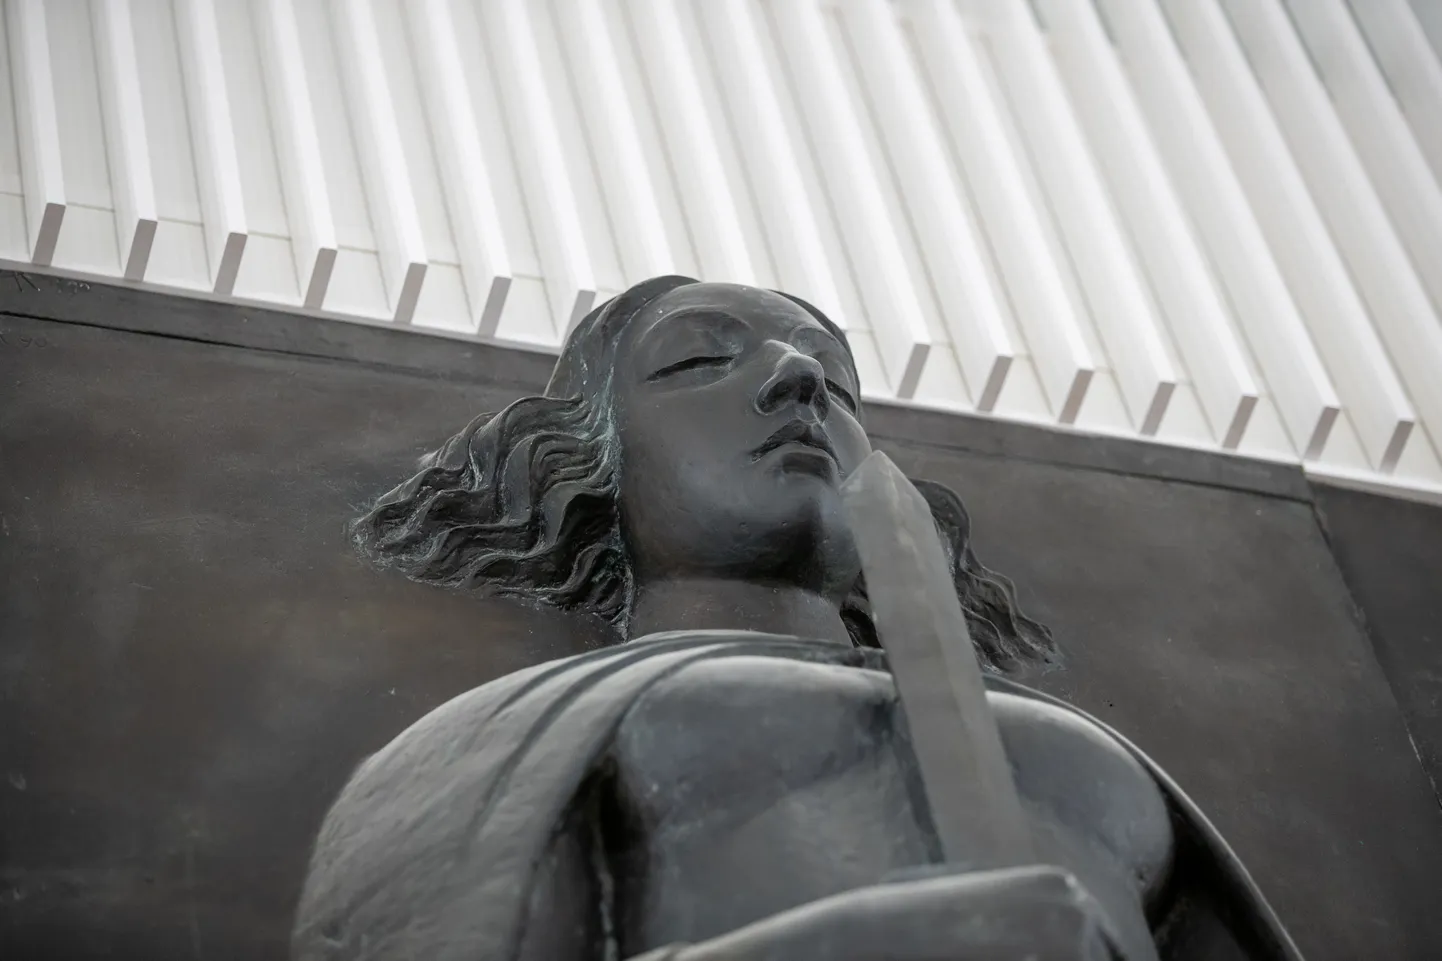 Система правовой помощи все еще хромает, нет хороших решений, чтобы ее спасти. На снимке скульптура здания суда Харьюского уездного суда «Юстиция» работы Айме Куульбуш-Мёльдер.